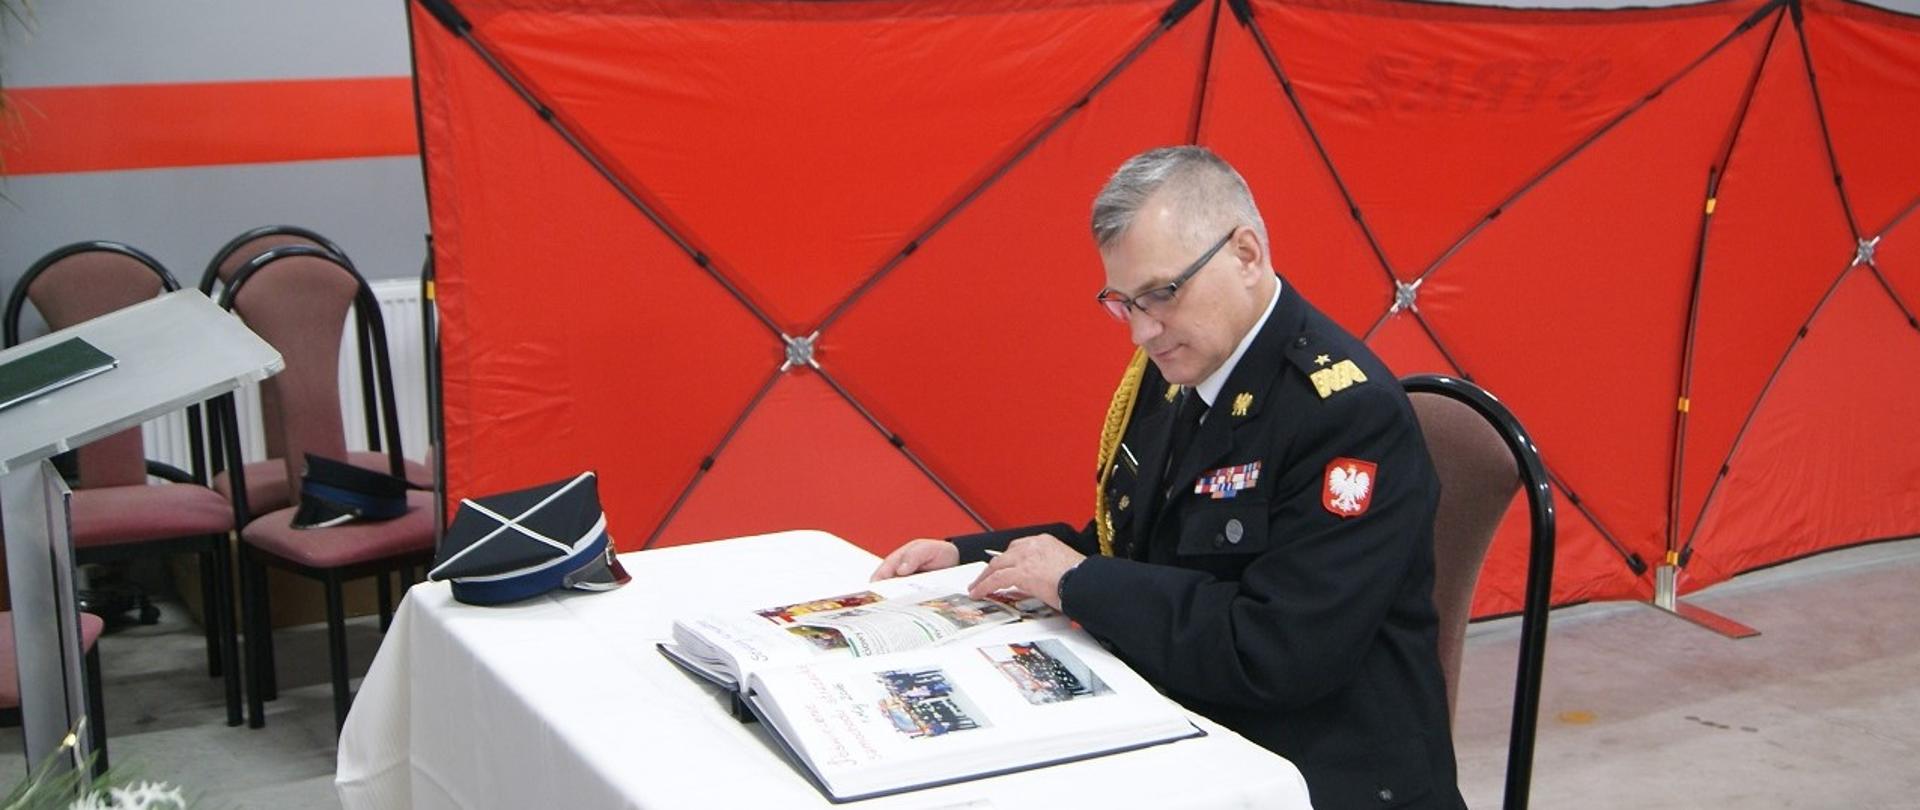 Komendant wojewódzki, generał, dokonuje wpisu w księdze pamiątkowej jednostki OSP. Na stole kronika, czapka, w tle parawan oddzielający wyposażenie remizy od miejsca uroczystości.